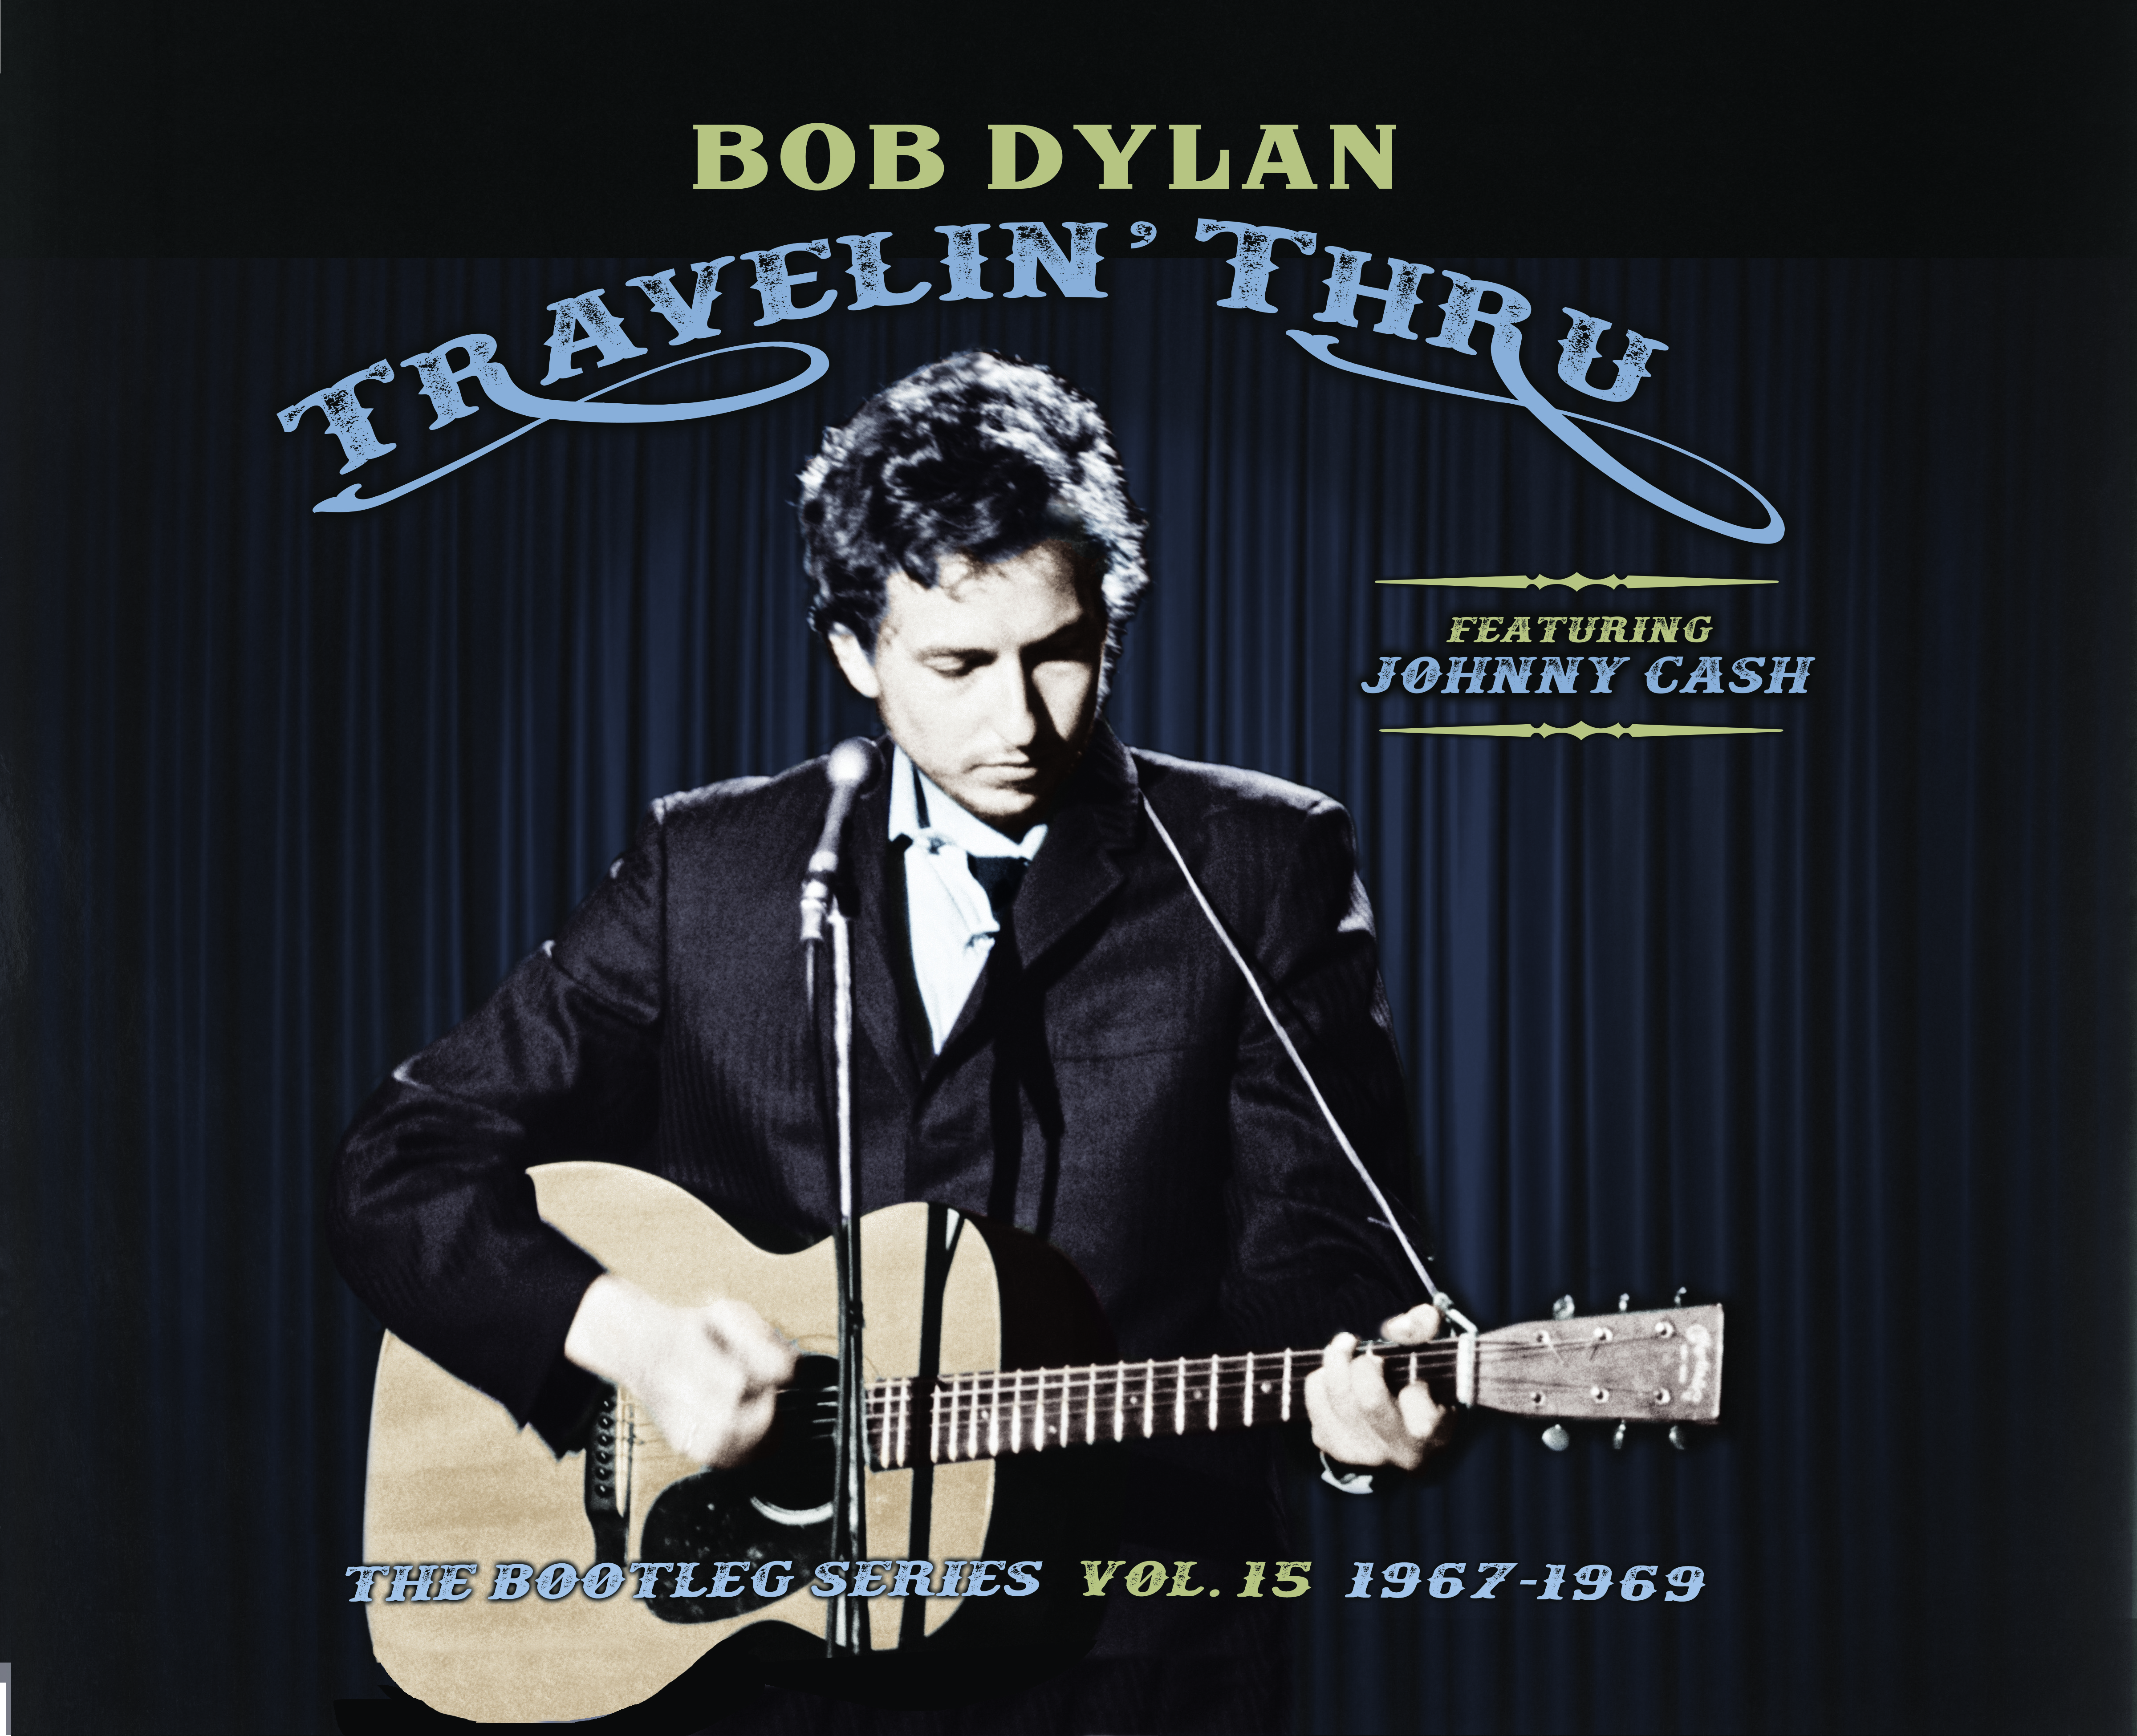 June 7, 1969, Nashville, Bob Dylan